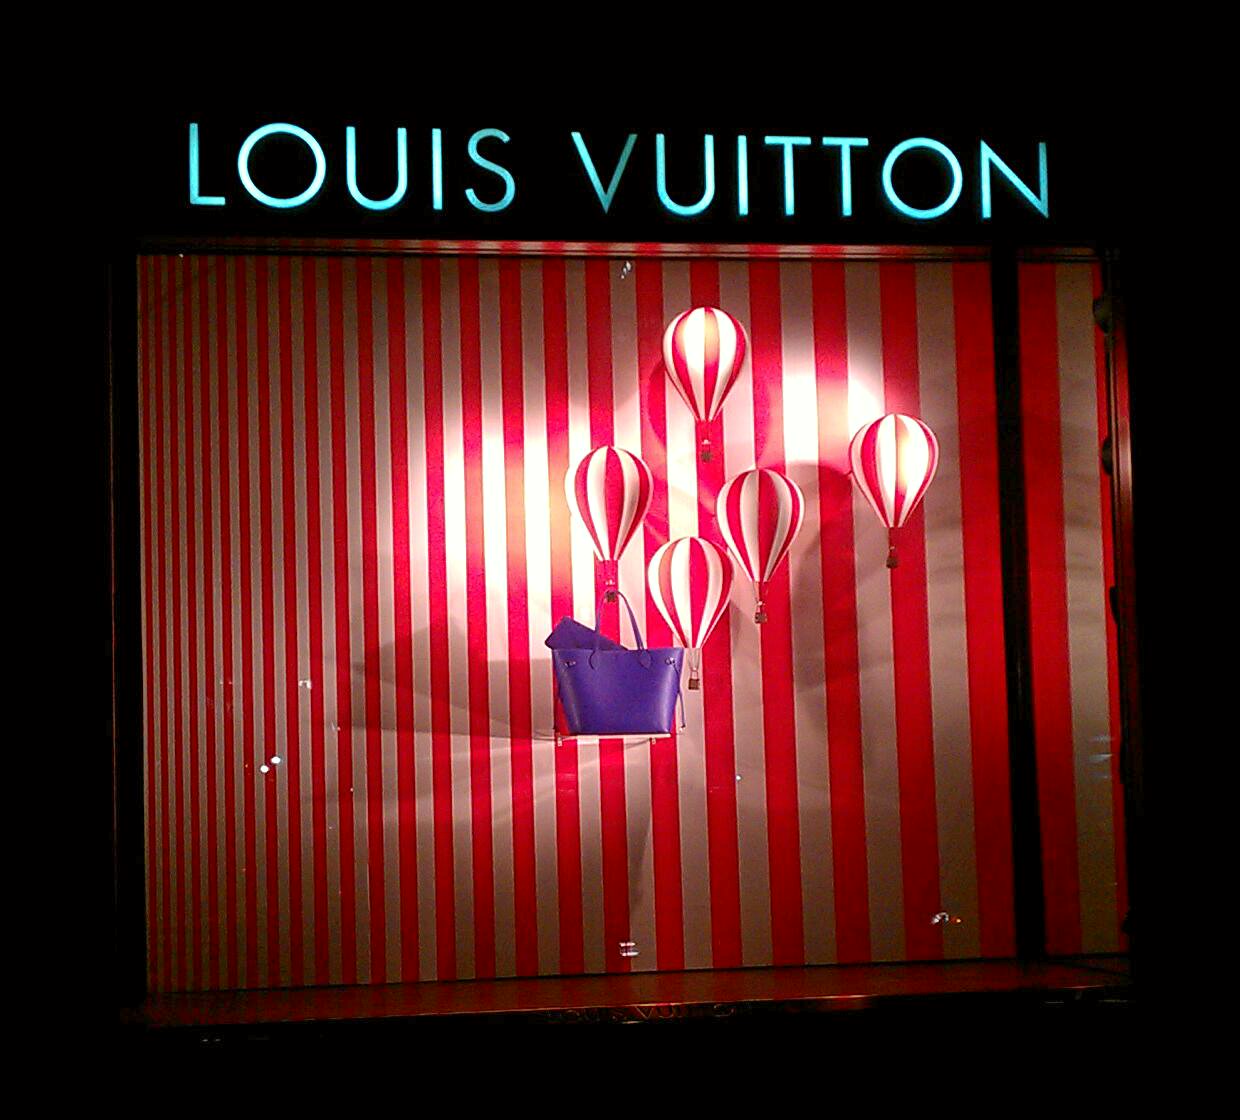 Louis Vuitton, Bangkok